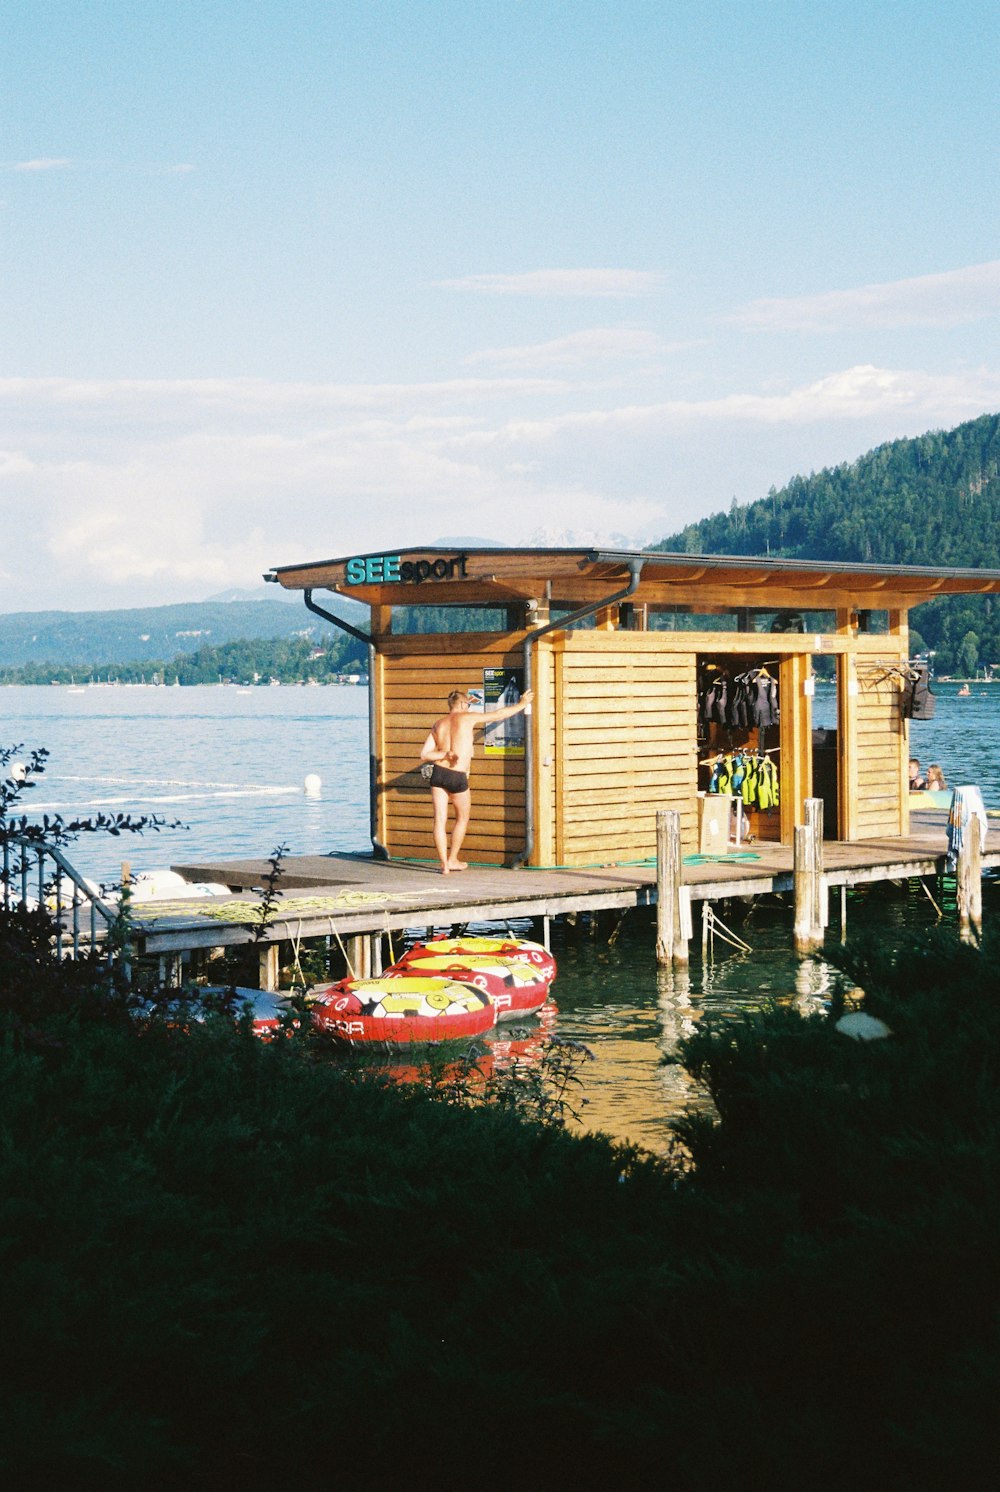 uma pequena casa de barcos em um lago com uma pessoa nele